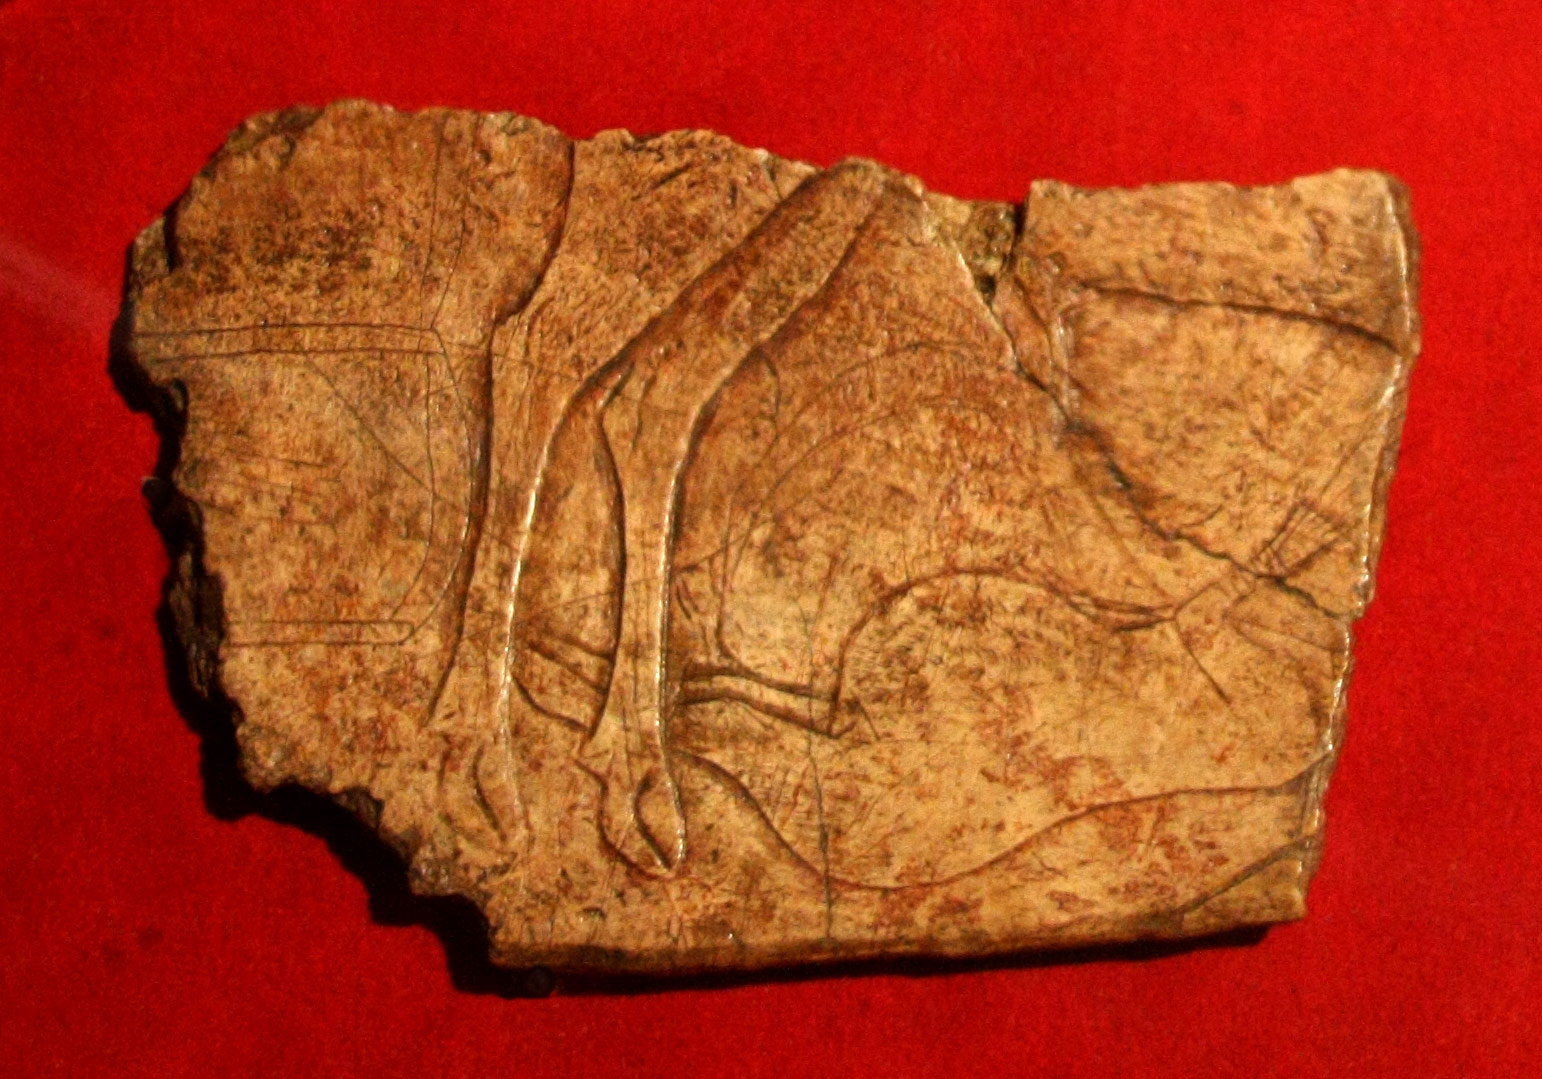 Premières preuves de pêche en haute mer il y a 42 000 ans - Hominides